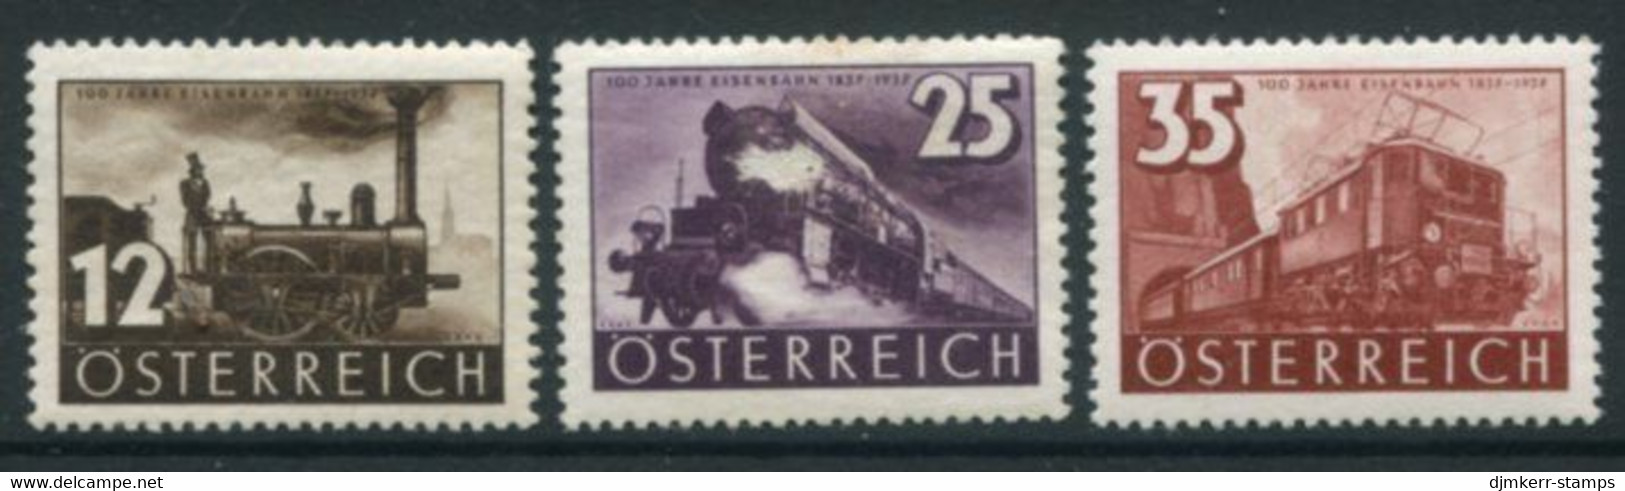 AUSTRIA 1937 Railway Centenary LHM / *.  Michel 646-48 - Ungebraucht